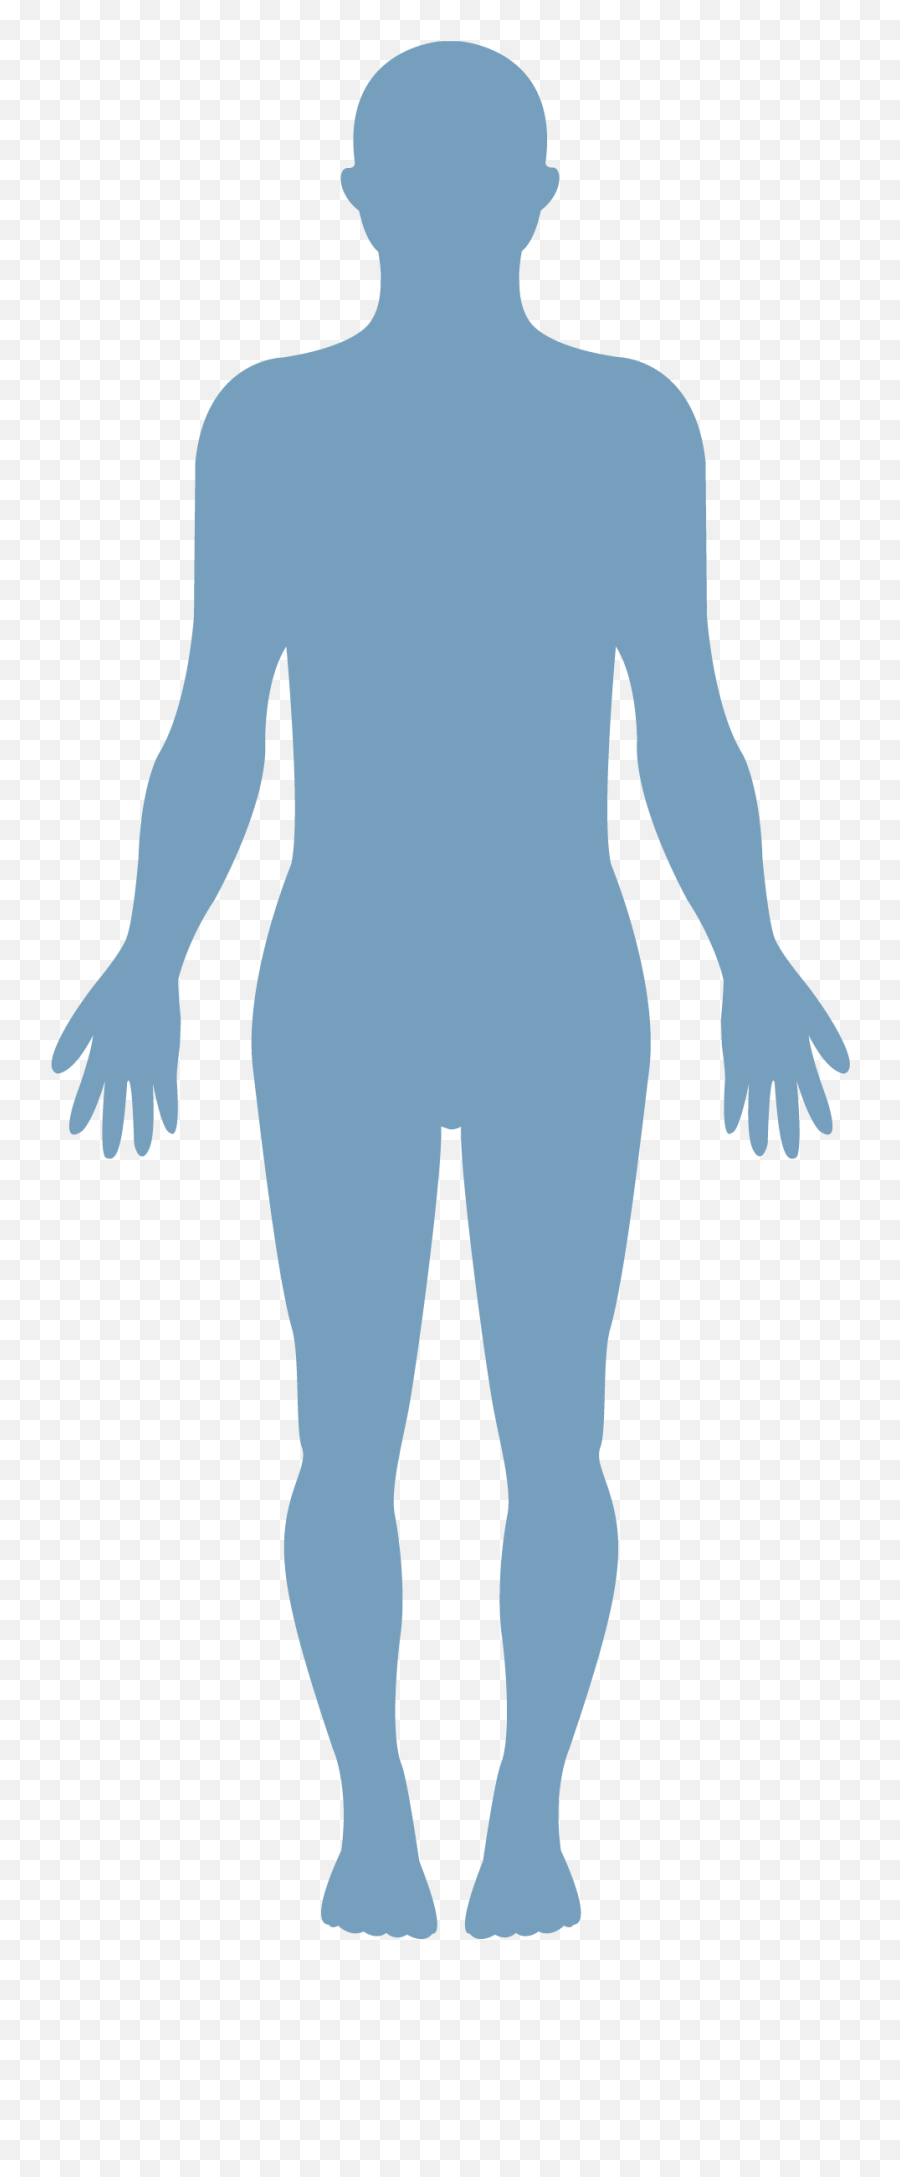 Symptoms Png - Human Body Silhouette,Human Body Png